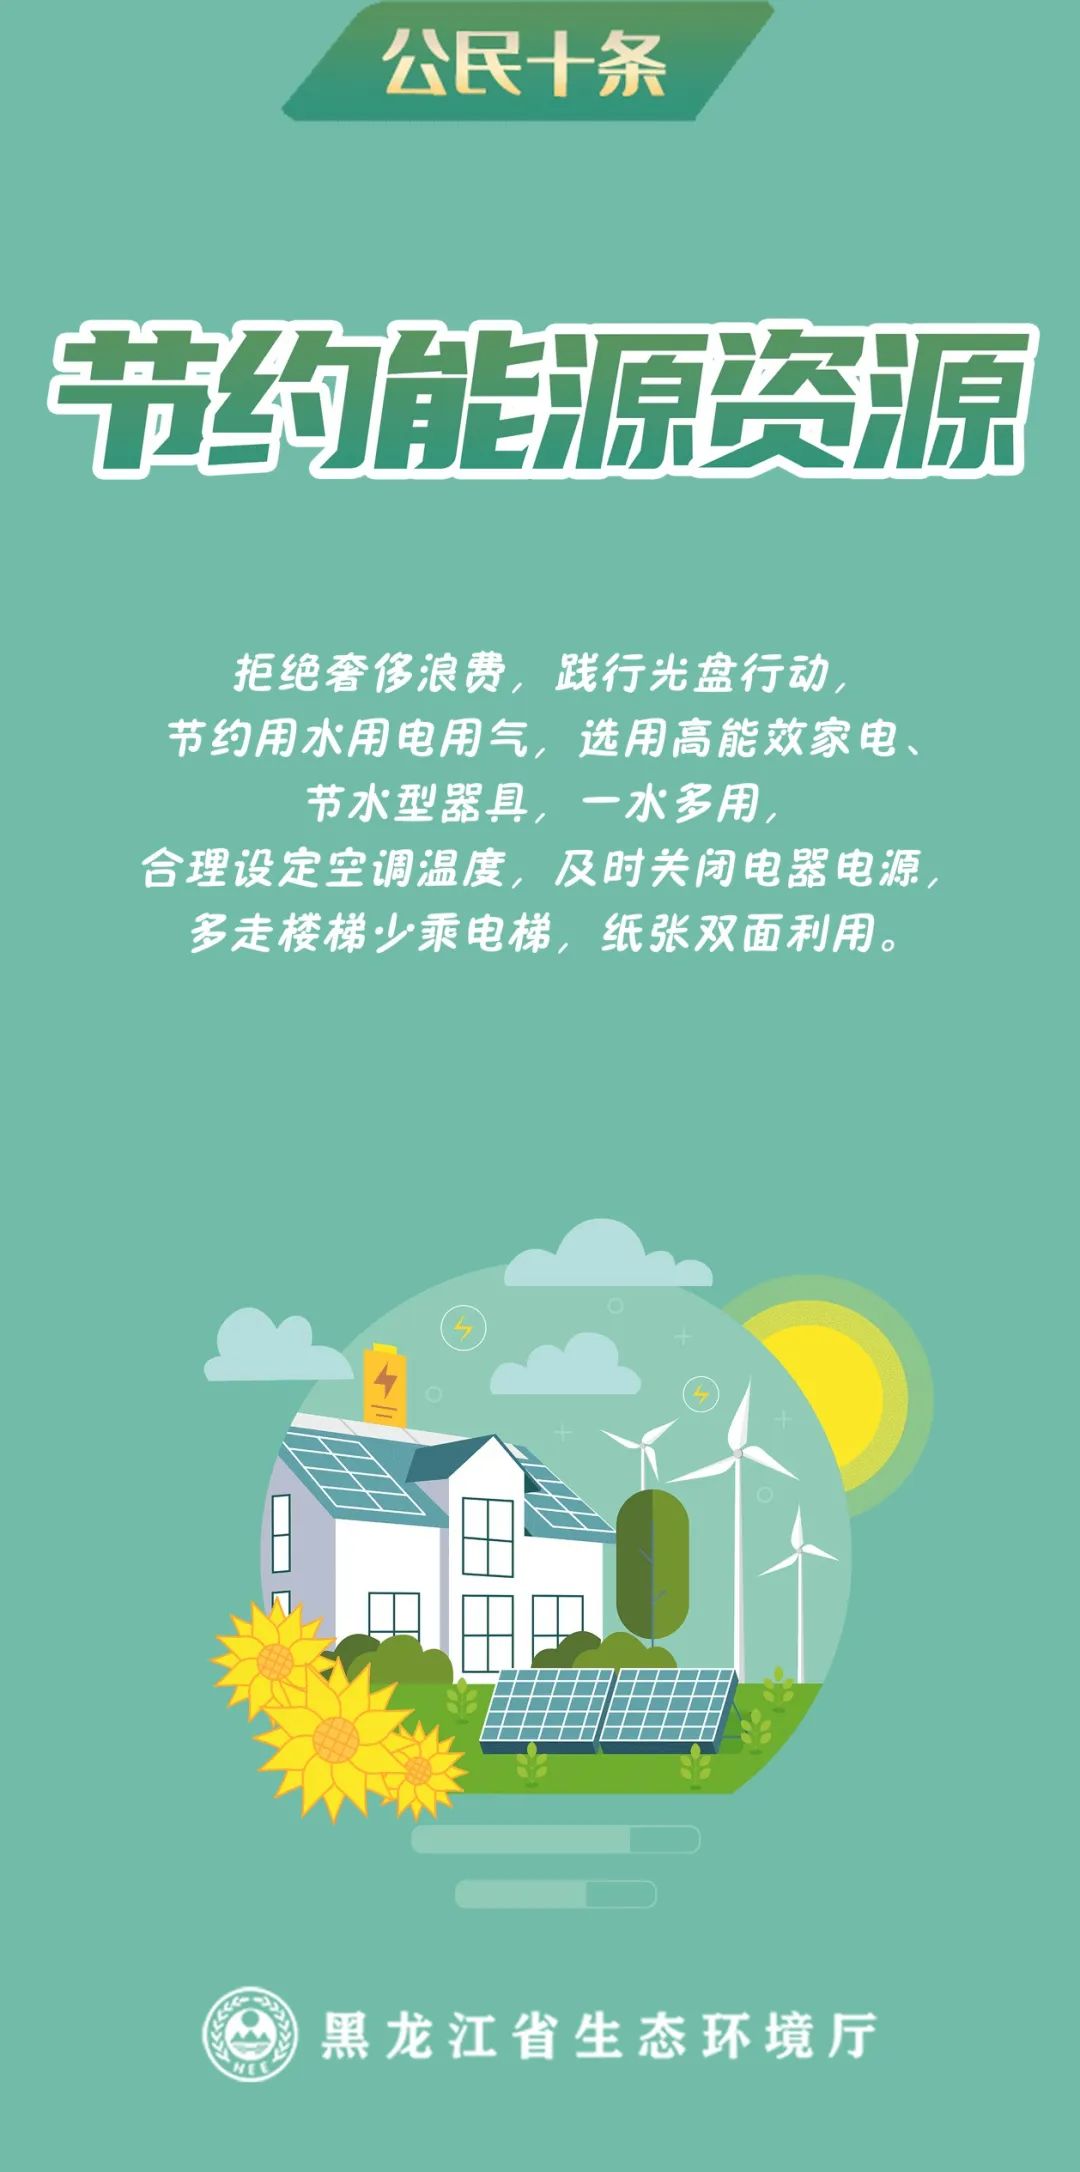 黑龙江省生态环境大使薛微微带你一起了解~公民十条有哪些内容?